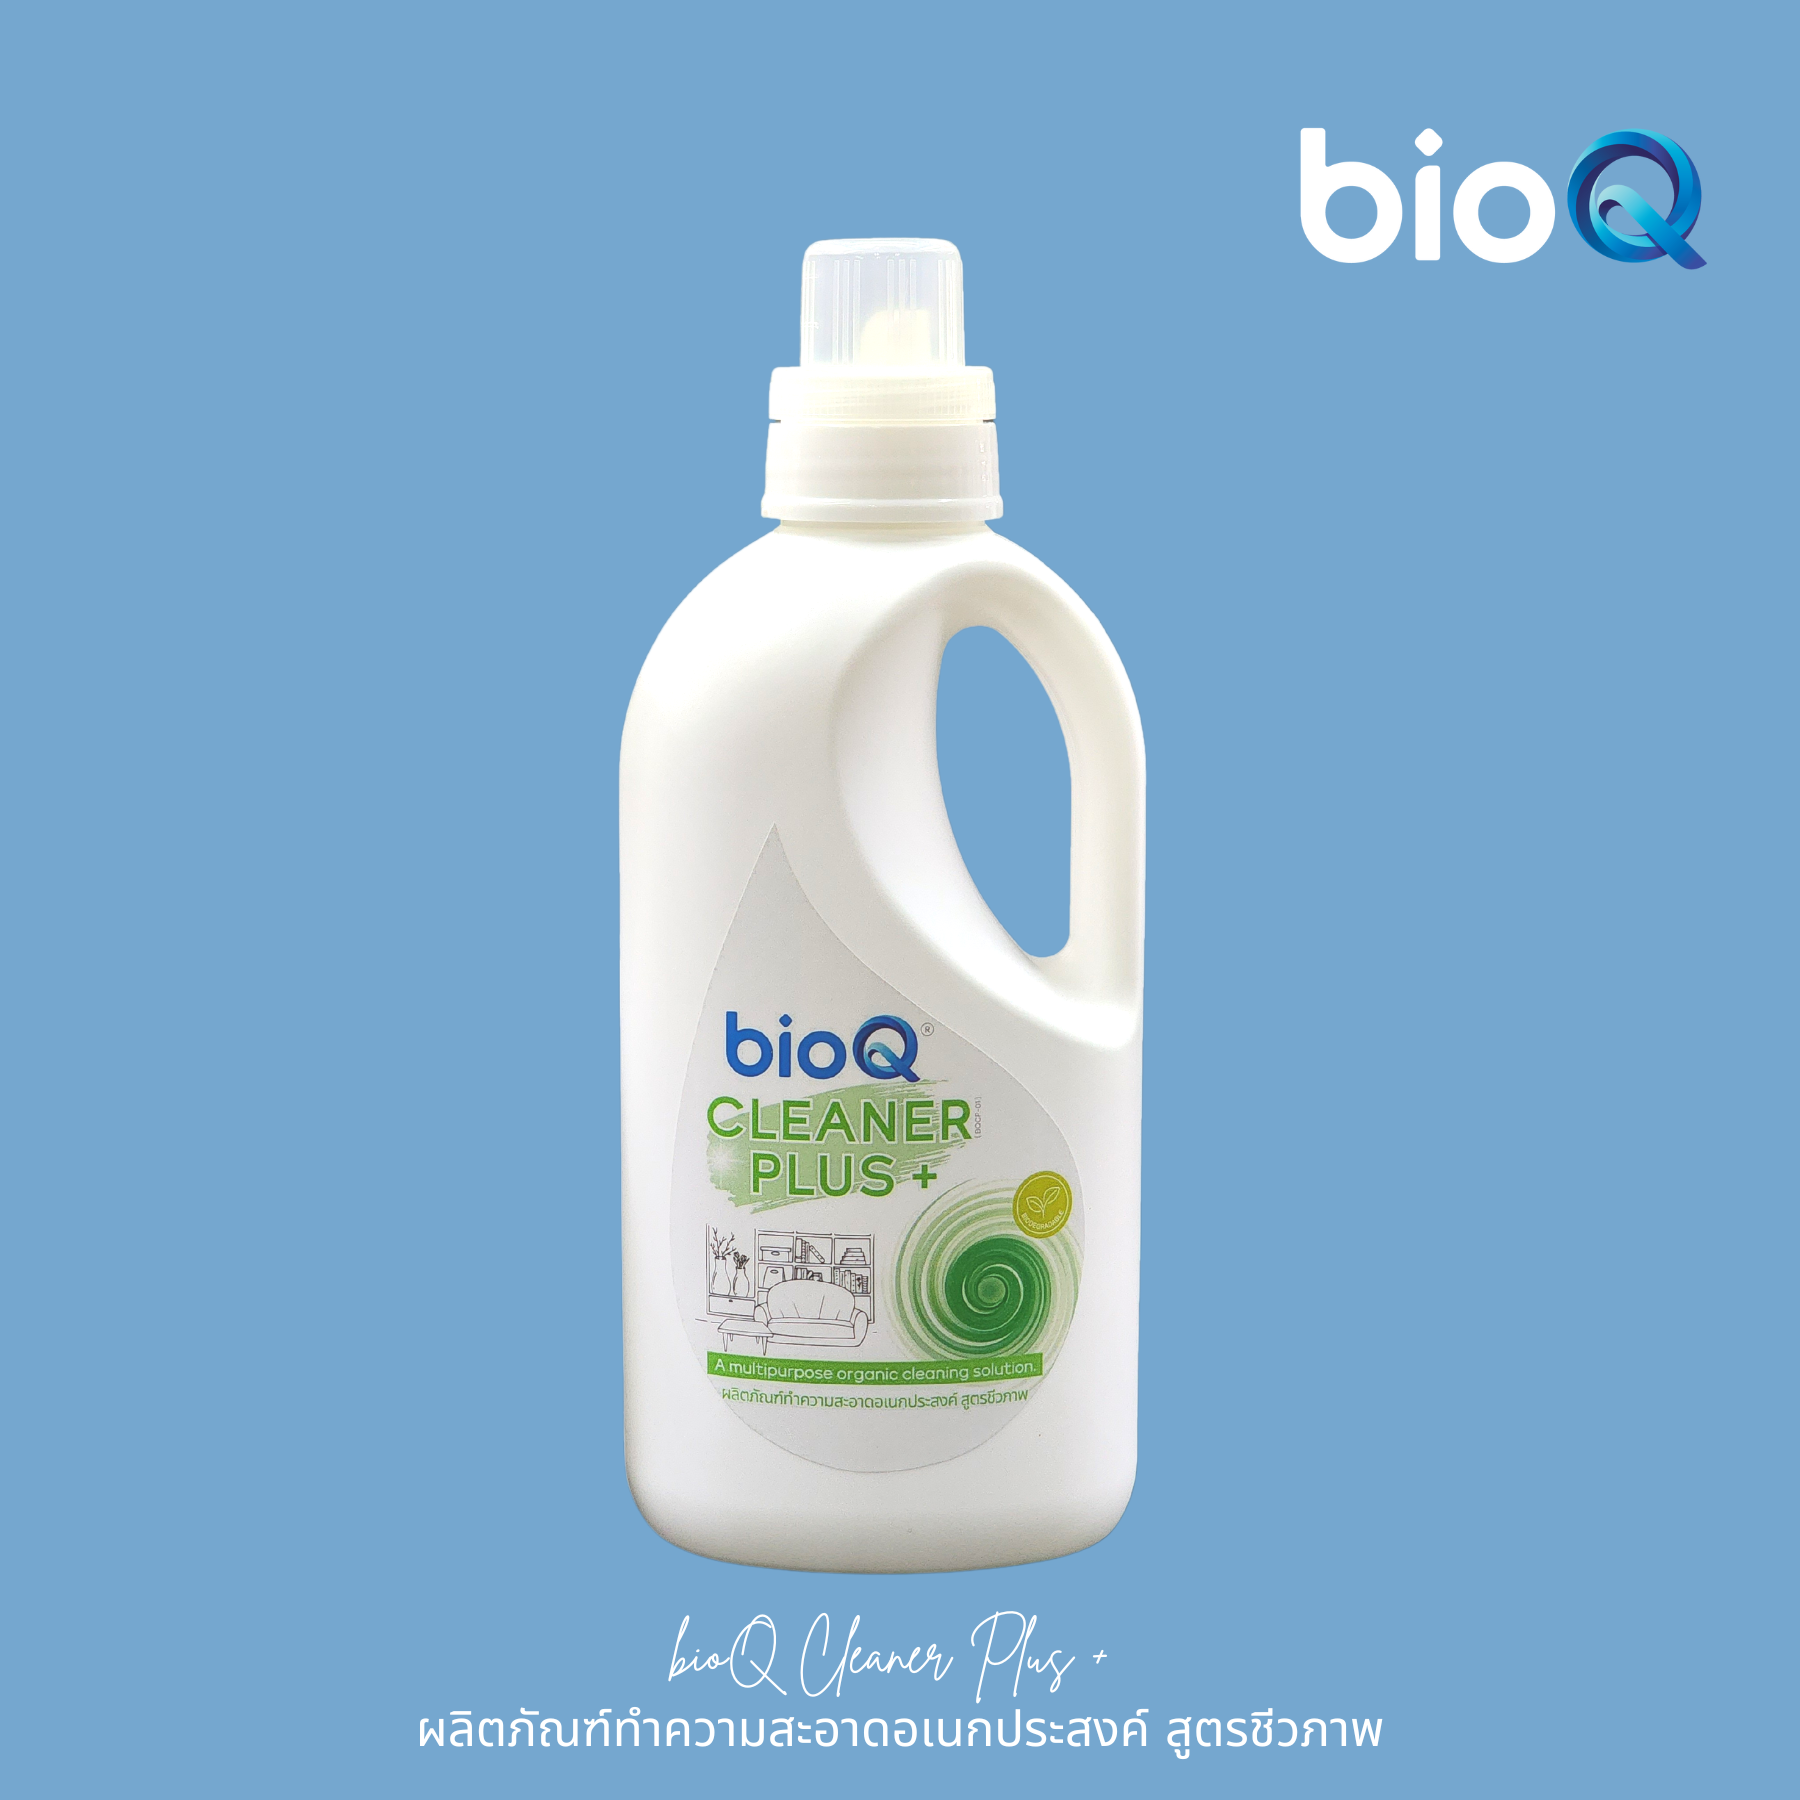 ผลิตภัณฑ์ทำความสะอาดพื้นผิวอเนกประสงค์ไบโอคิว คลีนเนอร์ พลัส / bioQ Cleaner Plus 1000 ml